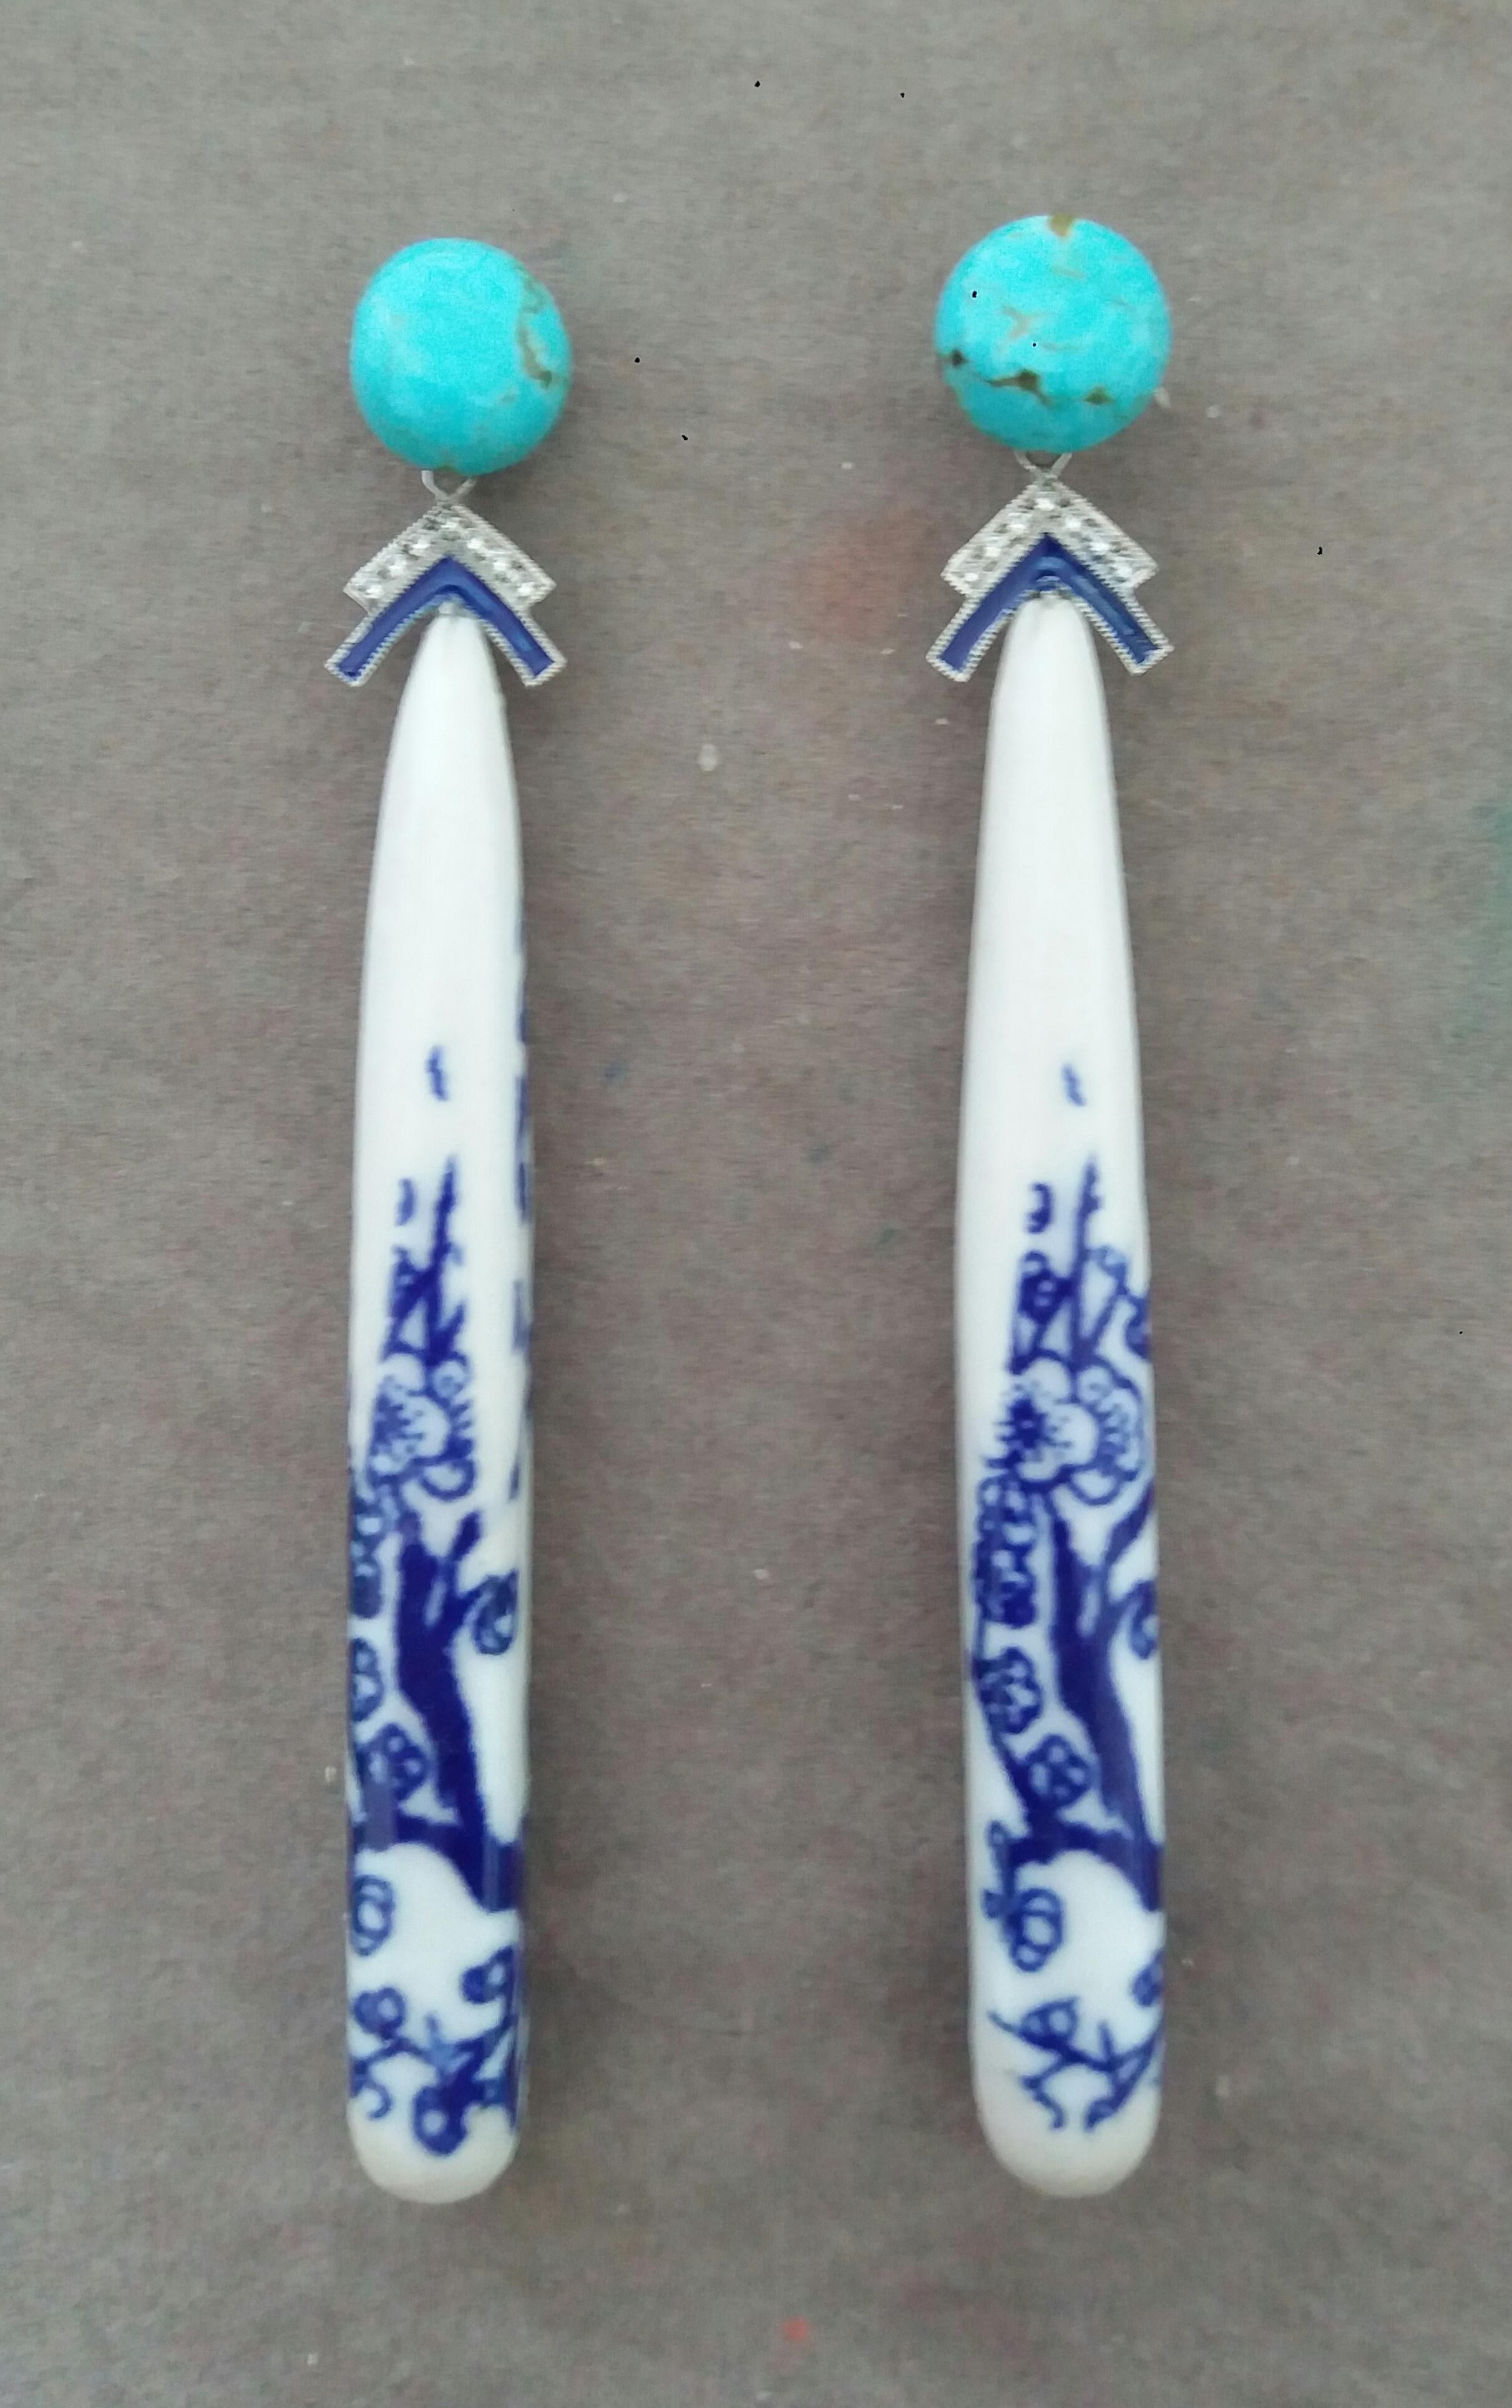 In diesen einzigartigen Ohrringen haben wir 2 chinesische Keramiktropfen von 70 mm Länge, die ein florales Muster darstellen und an 2 echten Türkisen aufgehängt sind  knöpfe mit einem Durchmesser von 10 mm und 2 Elementen aus Weißgold, blauer